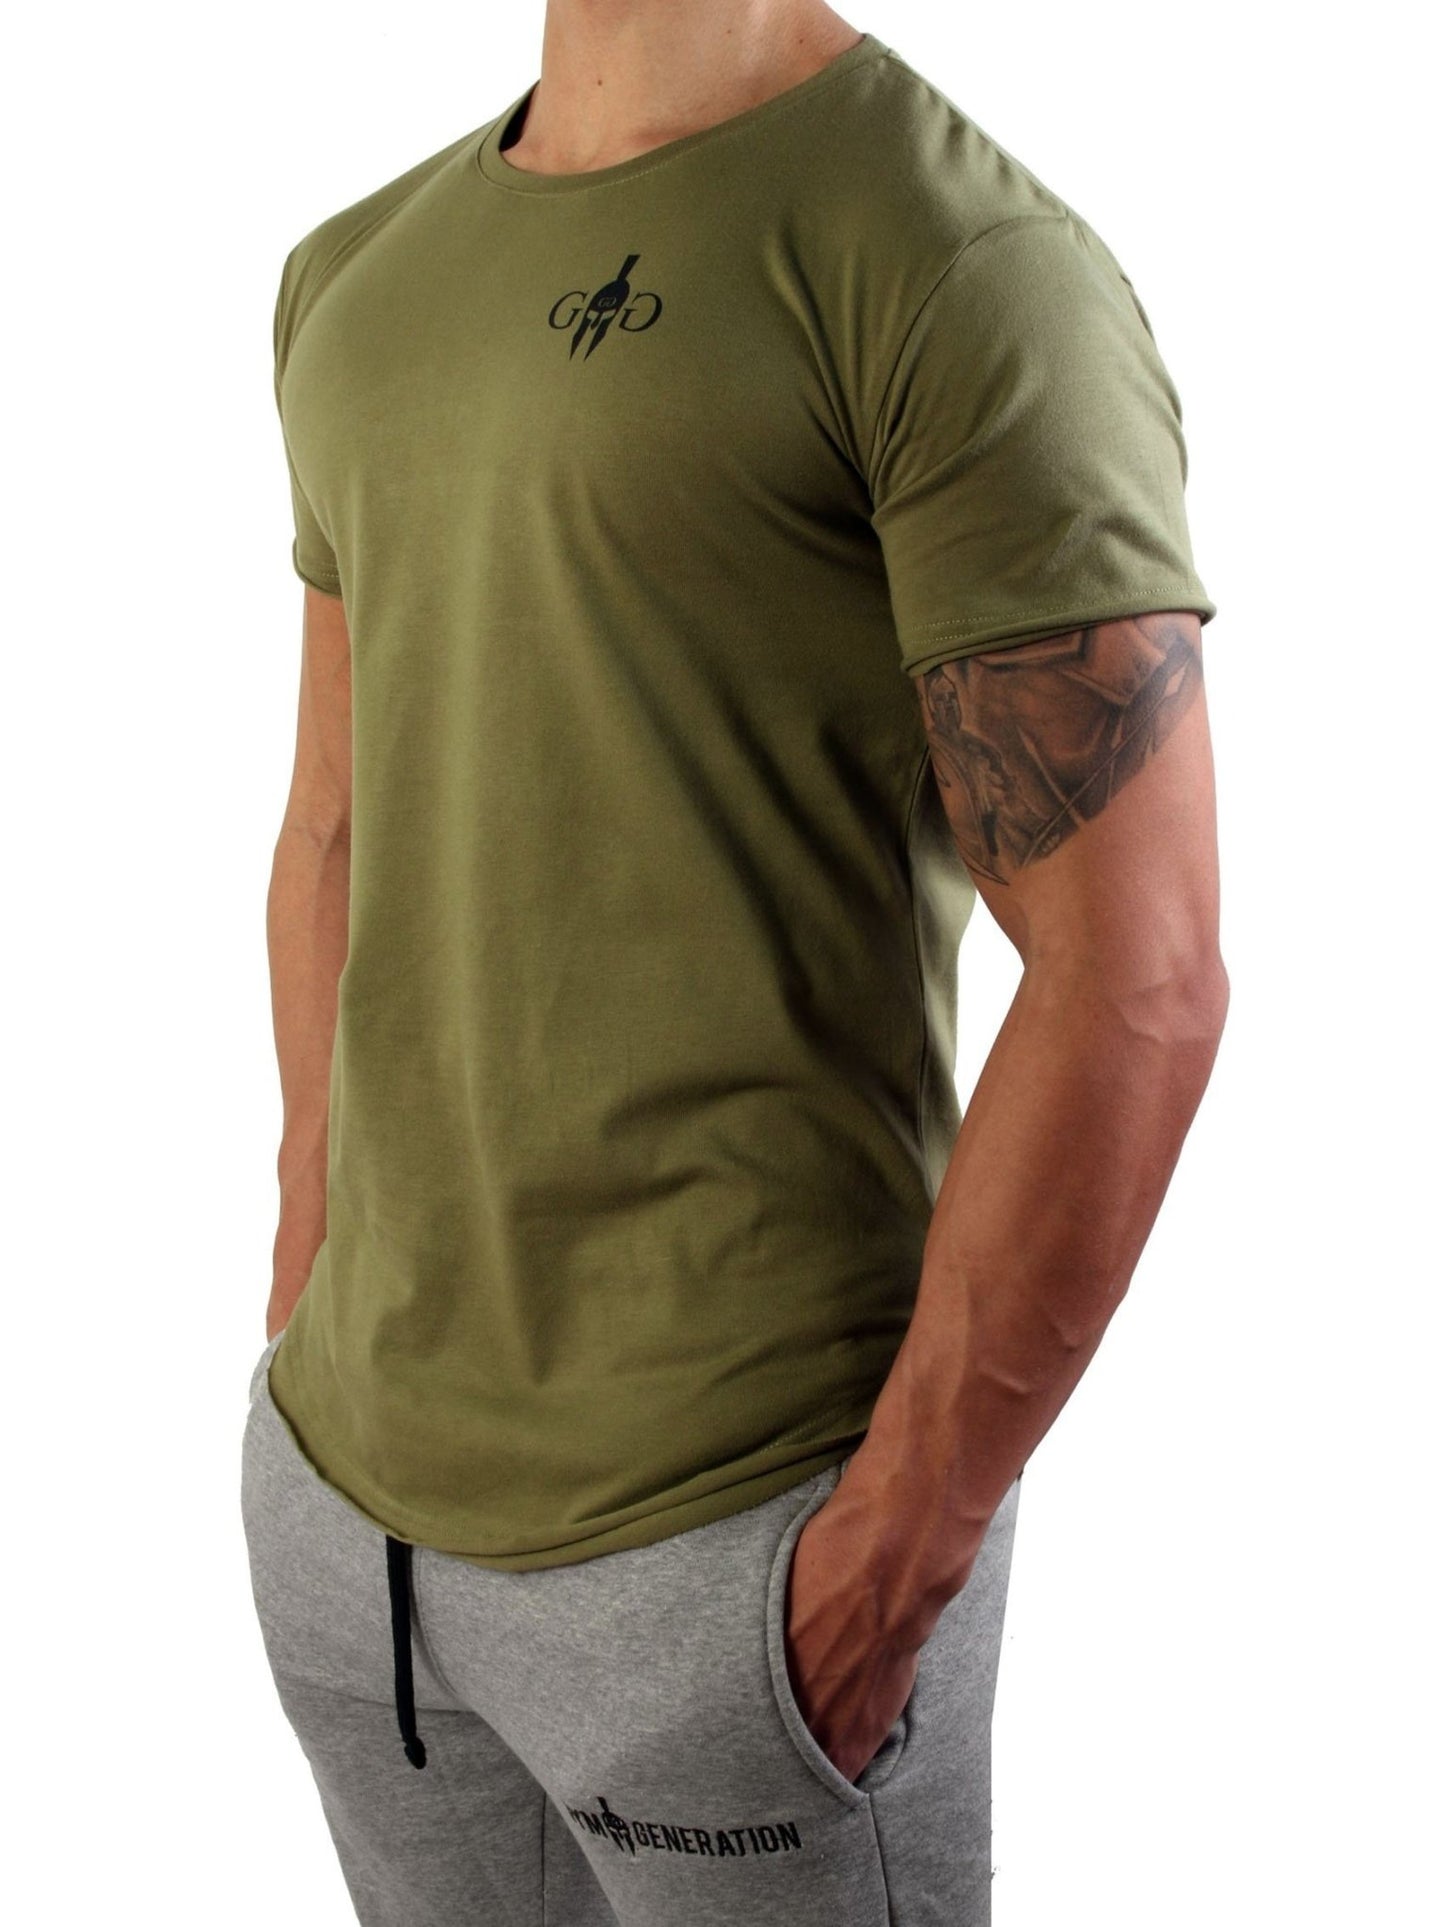 Hochwertiges olivgrünes Gym T-Shirt aus Baumwolle, bietet hervorragenden Tragekomfort und Langlebigkeit.